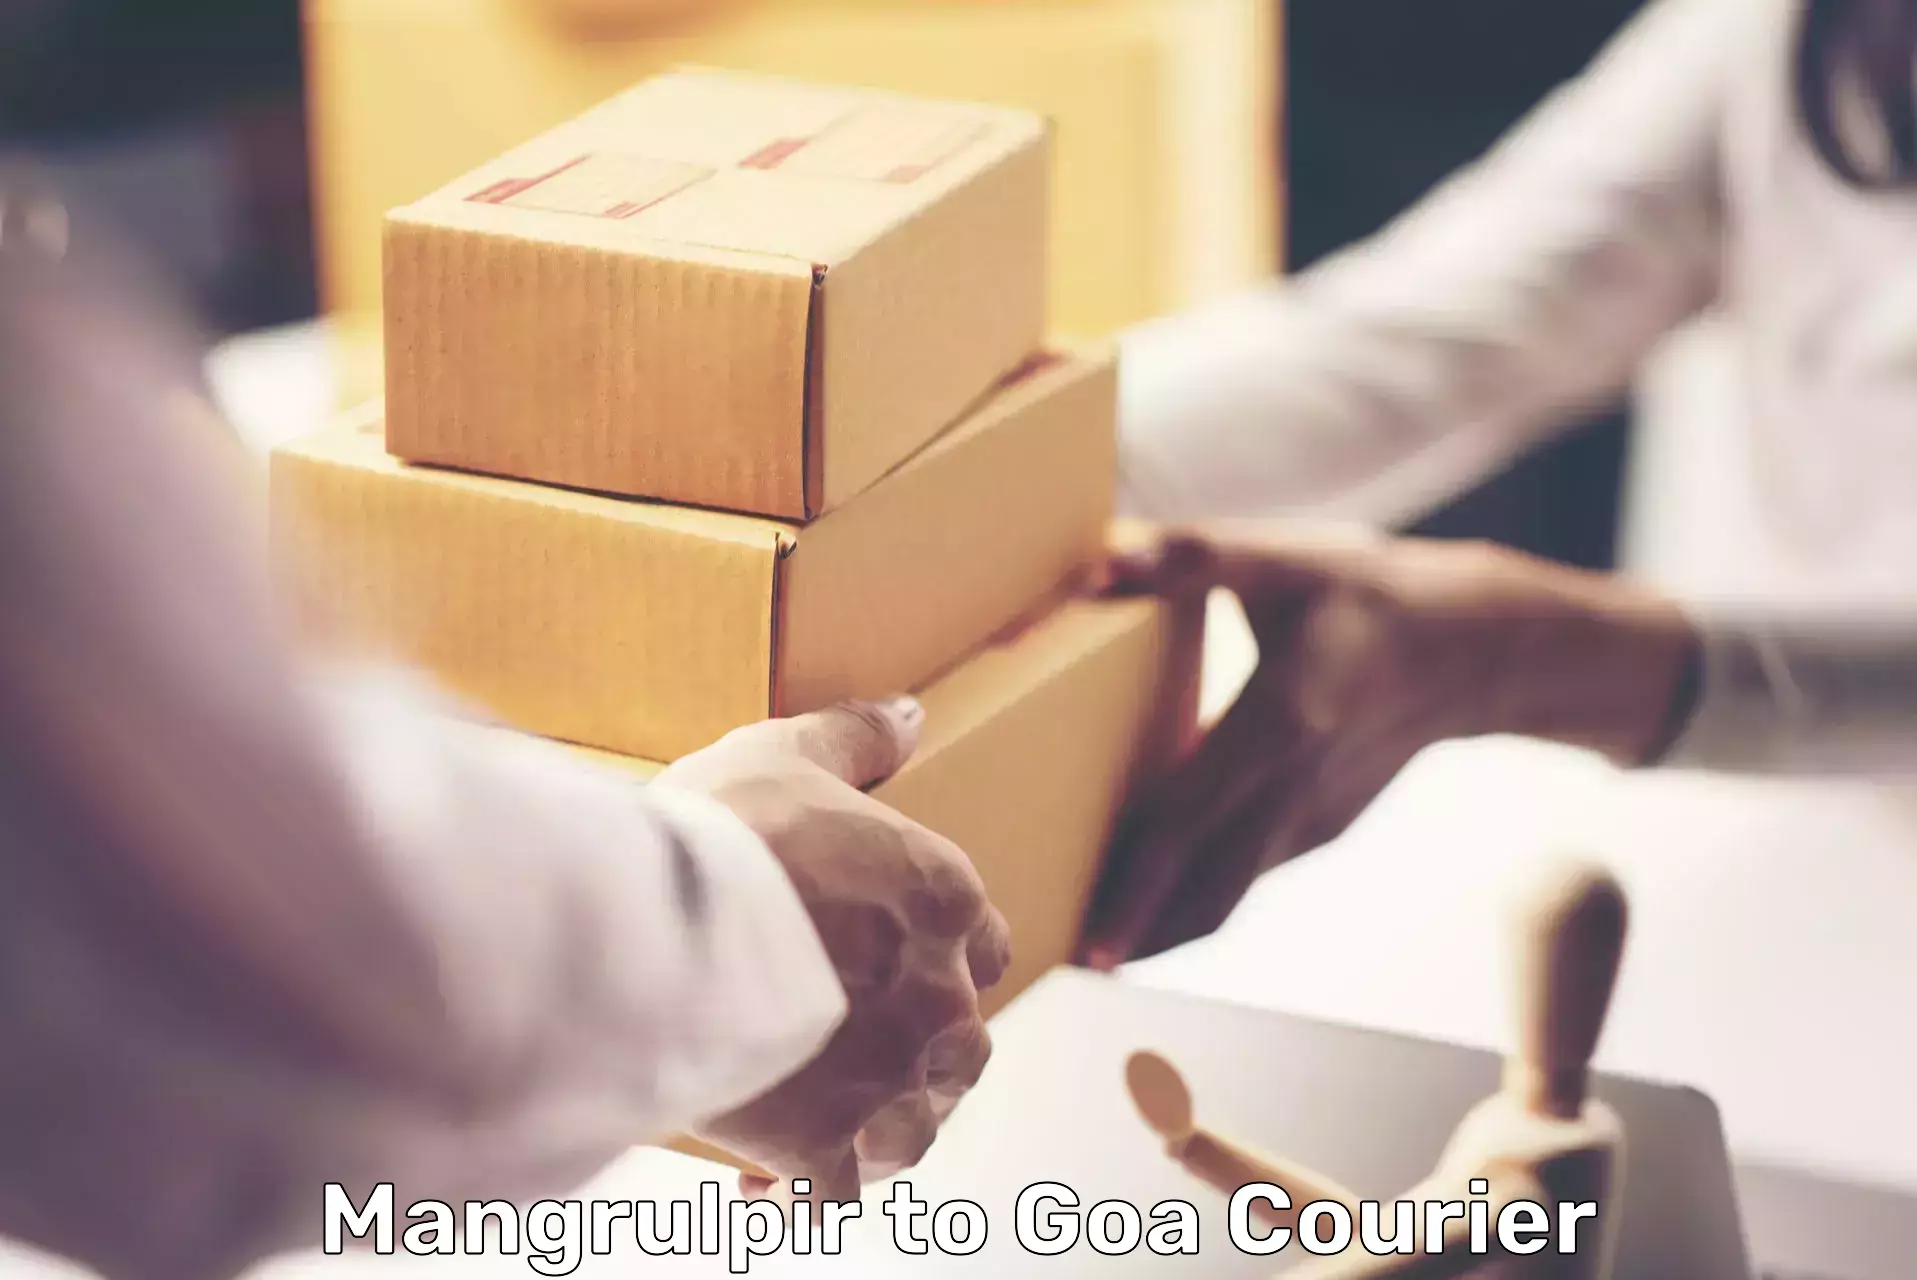 Specialized shipment handling in Mangrulpir to Goa